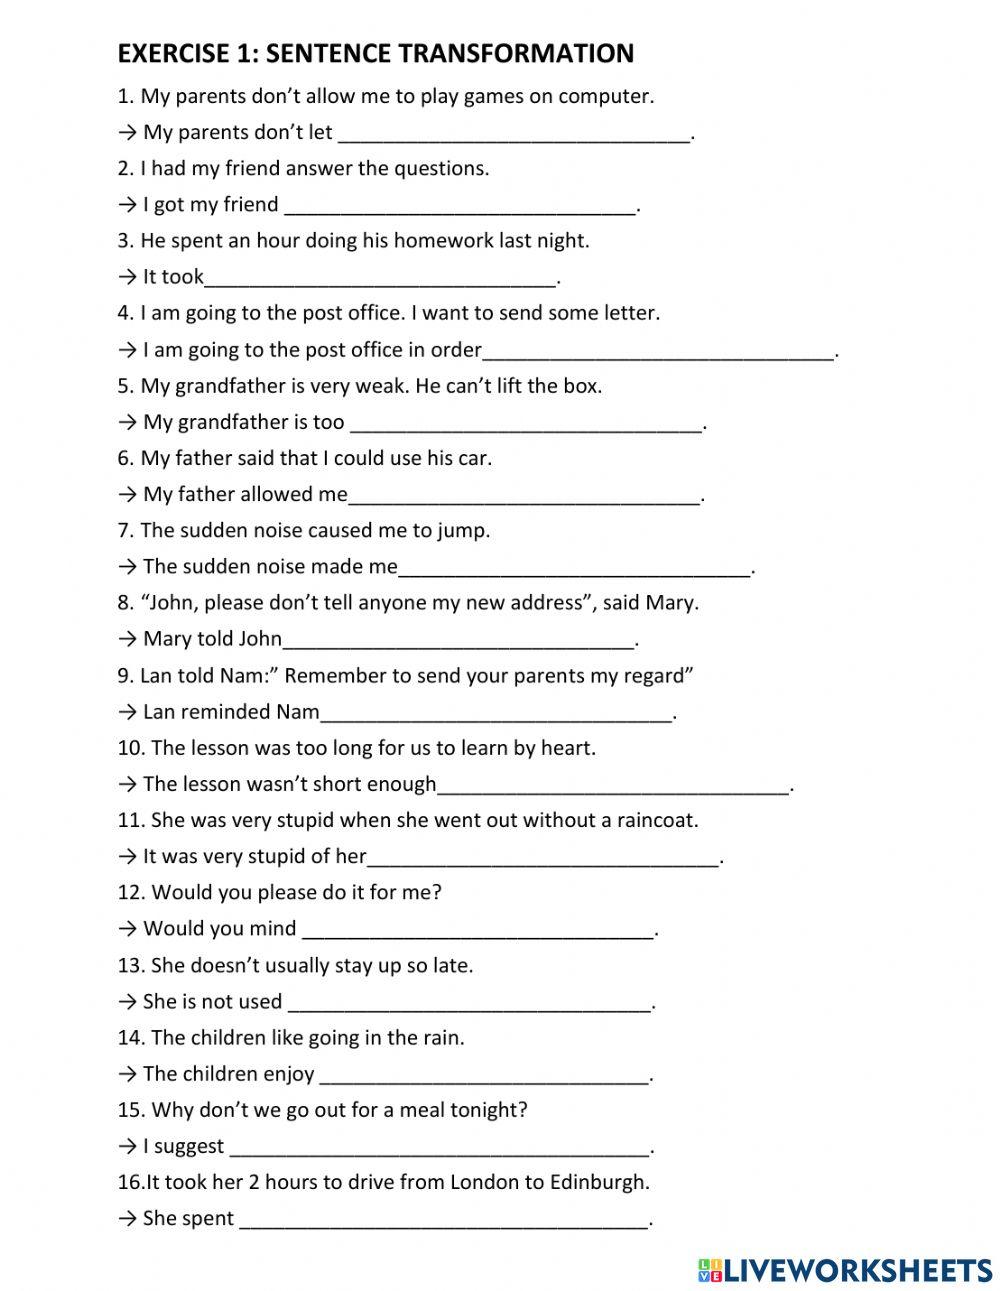 Sentence transformation-Verb form worksheet | Live Worksheets